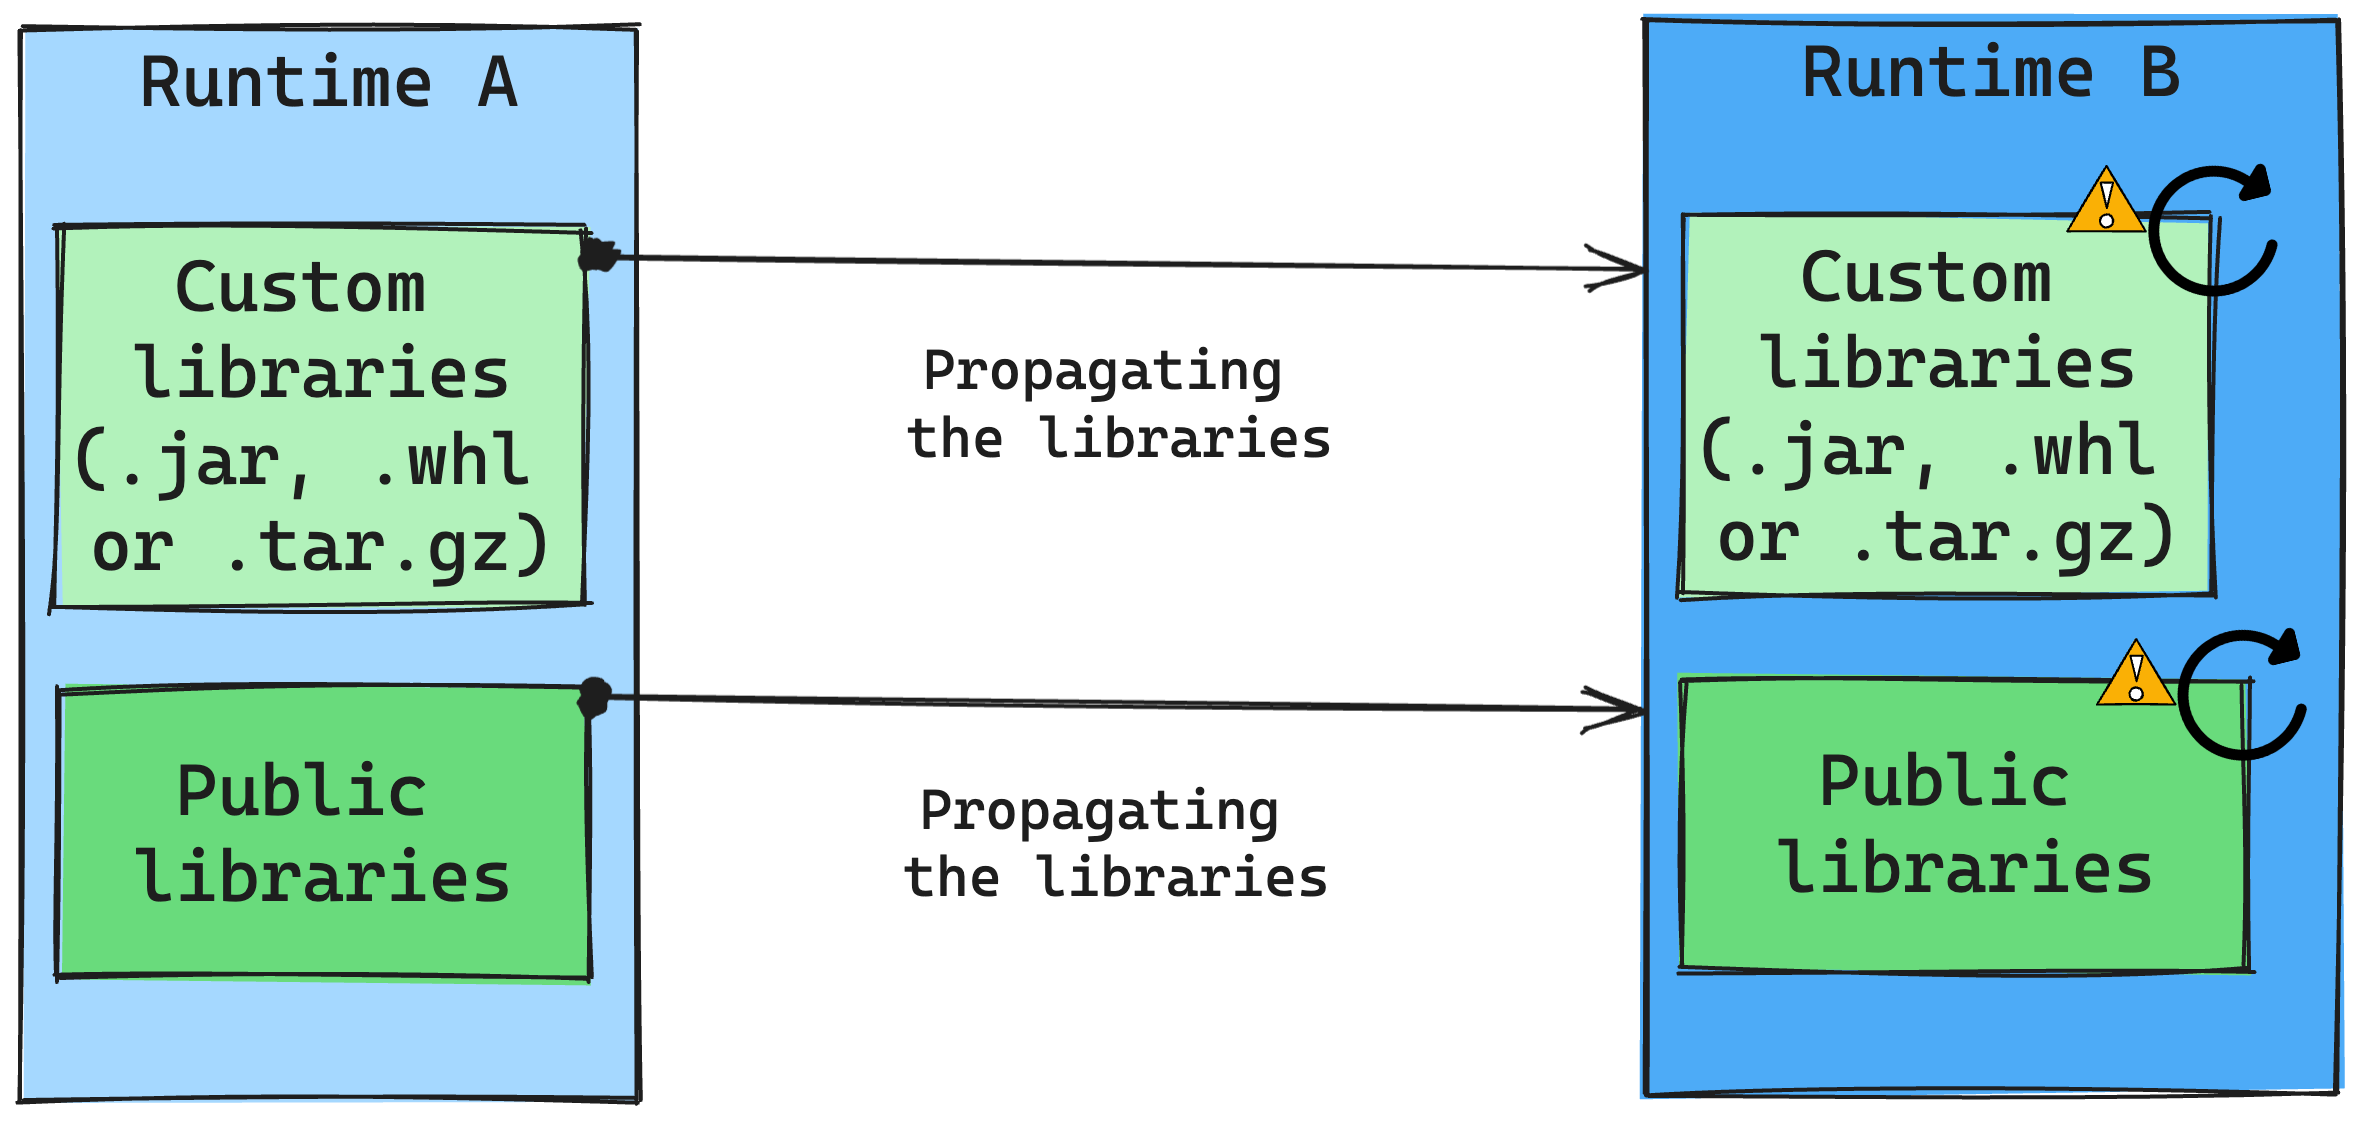 Alteração do runtime no gerenciamento de bibliotecas.